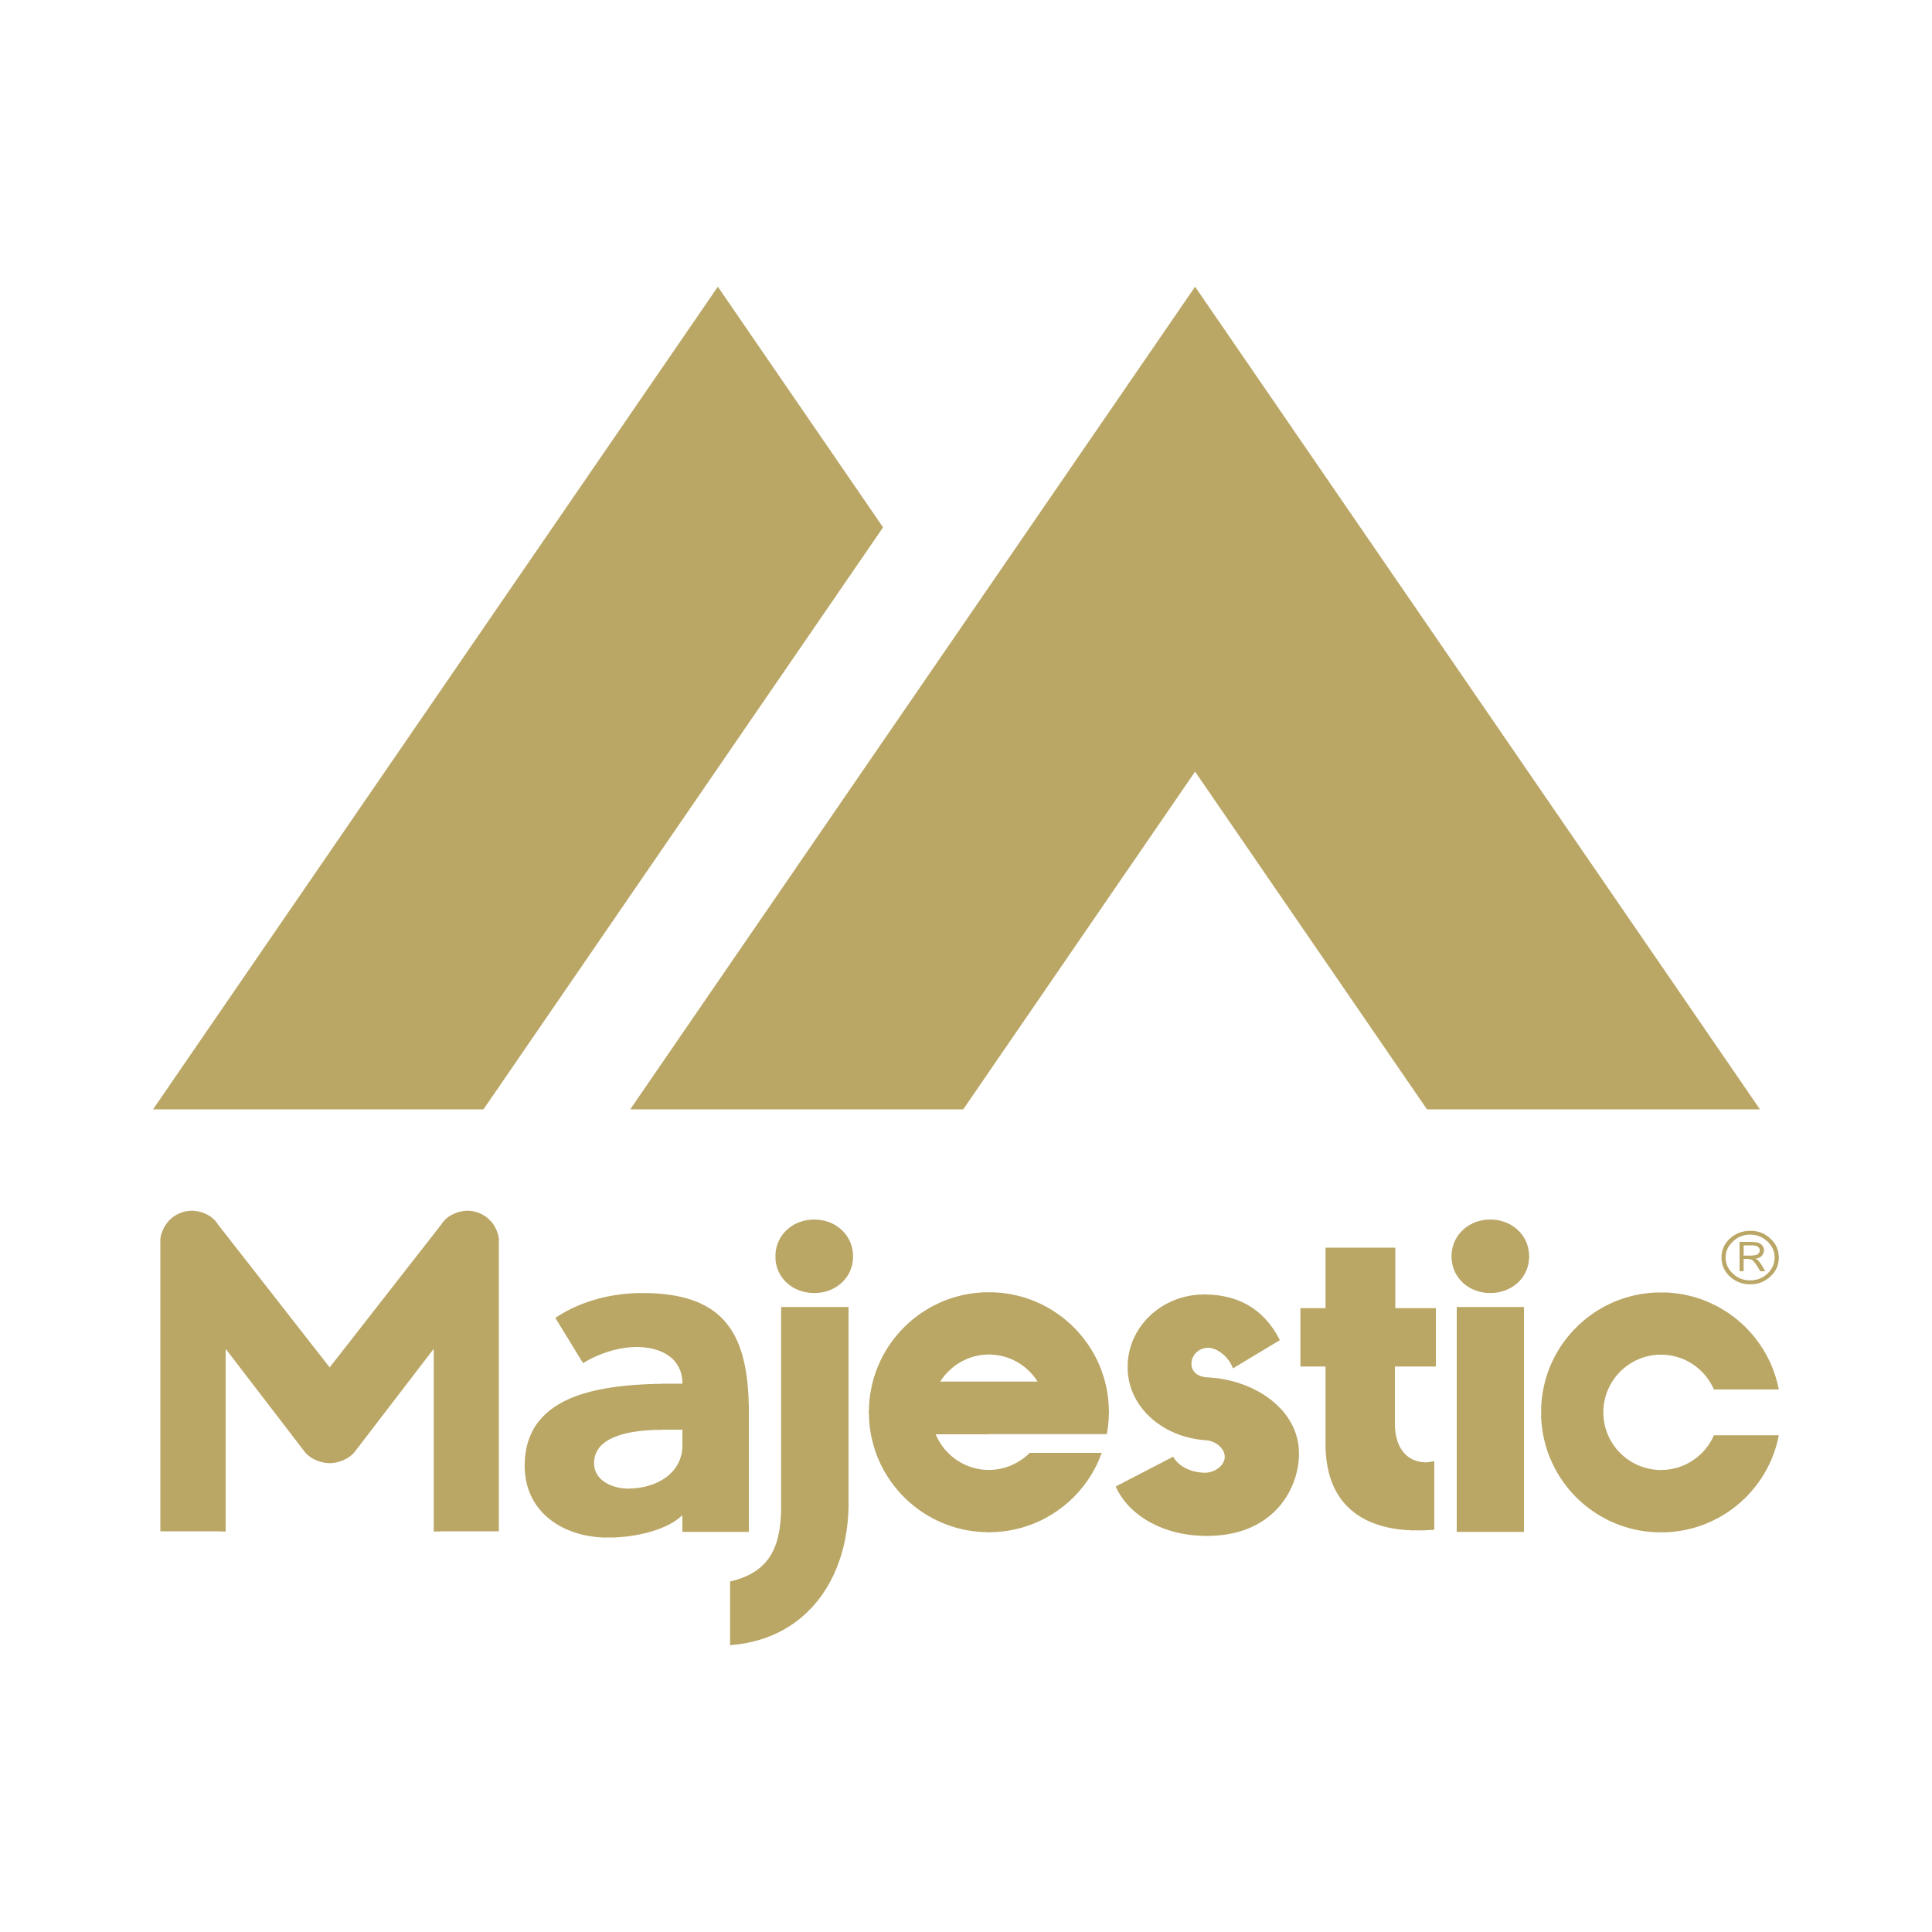 Majestic png logo gta 5 фото 15